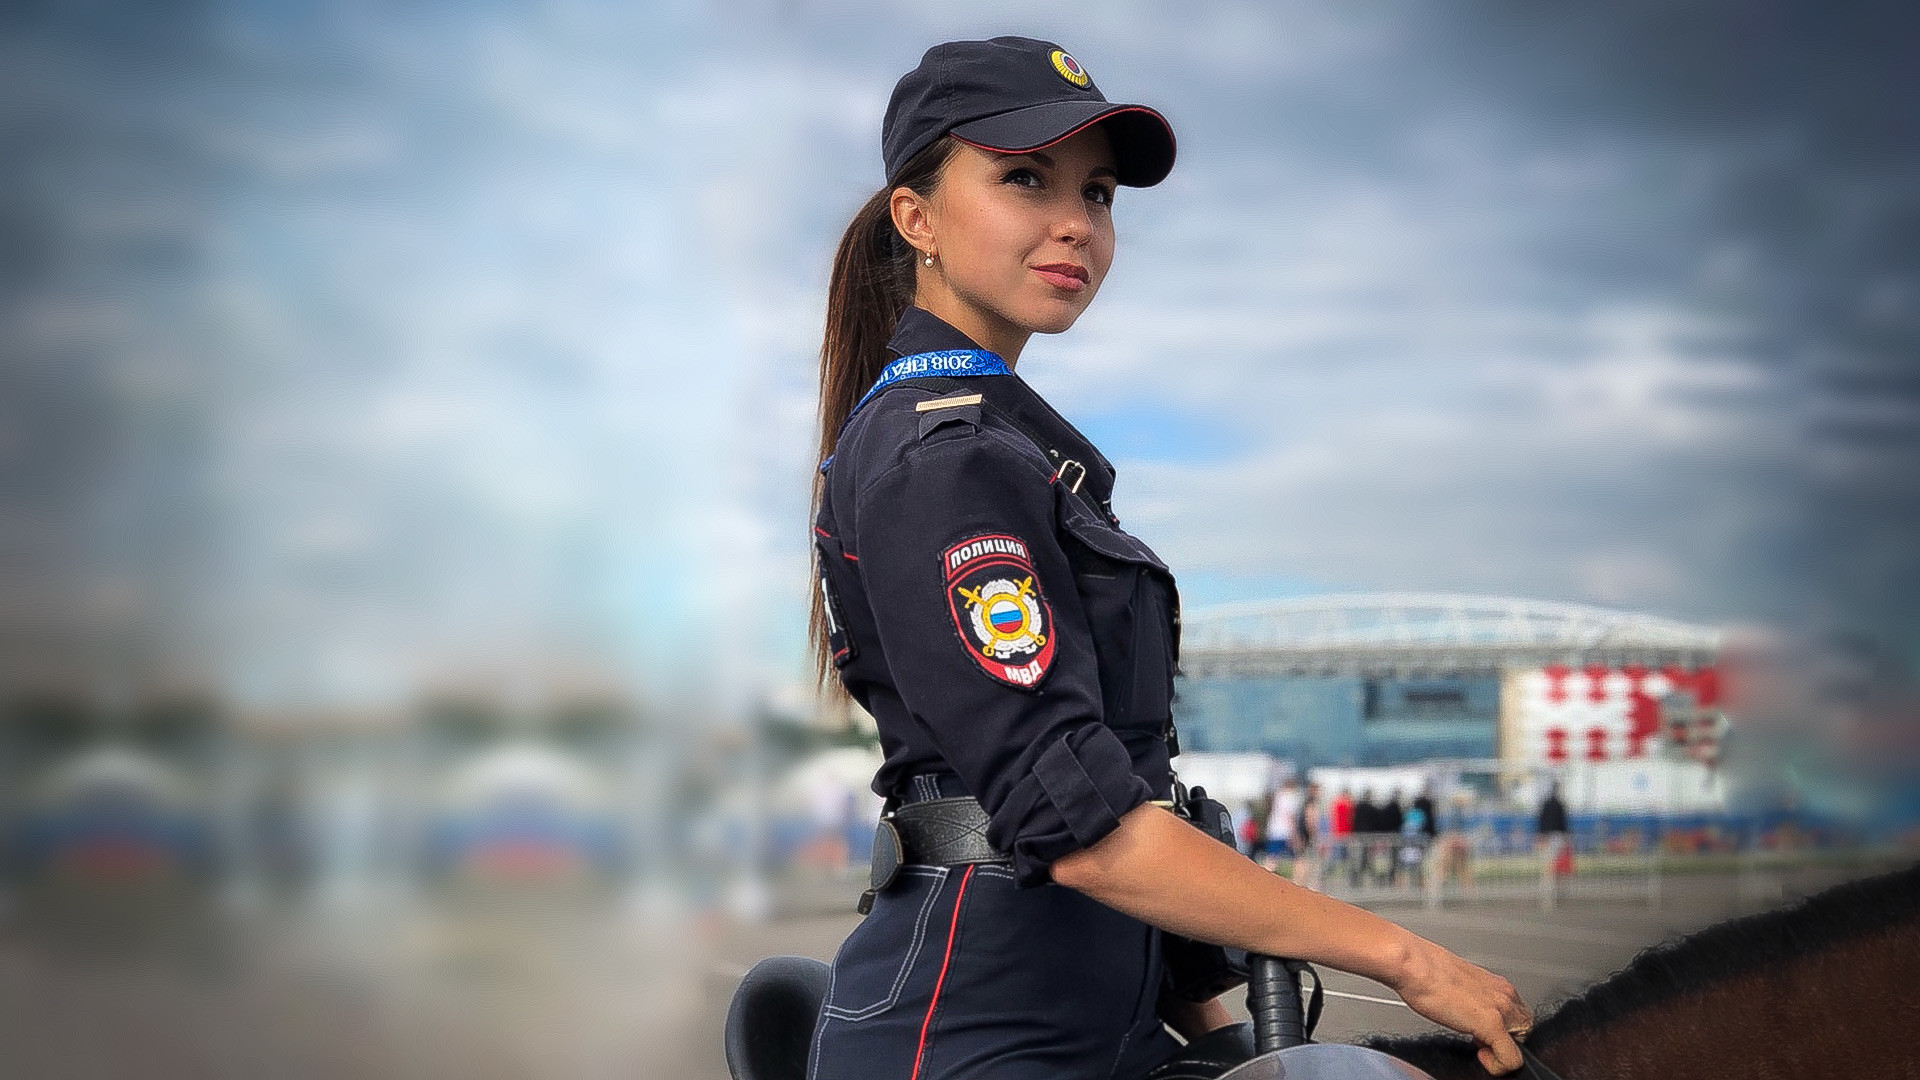 Daria Youssoupova La Policière La Plus Jolie De Russie Russia Beyond Fr